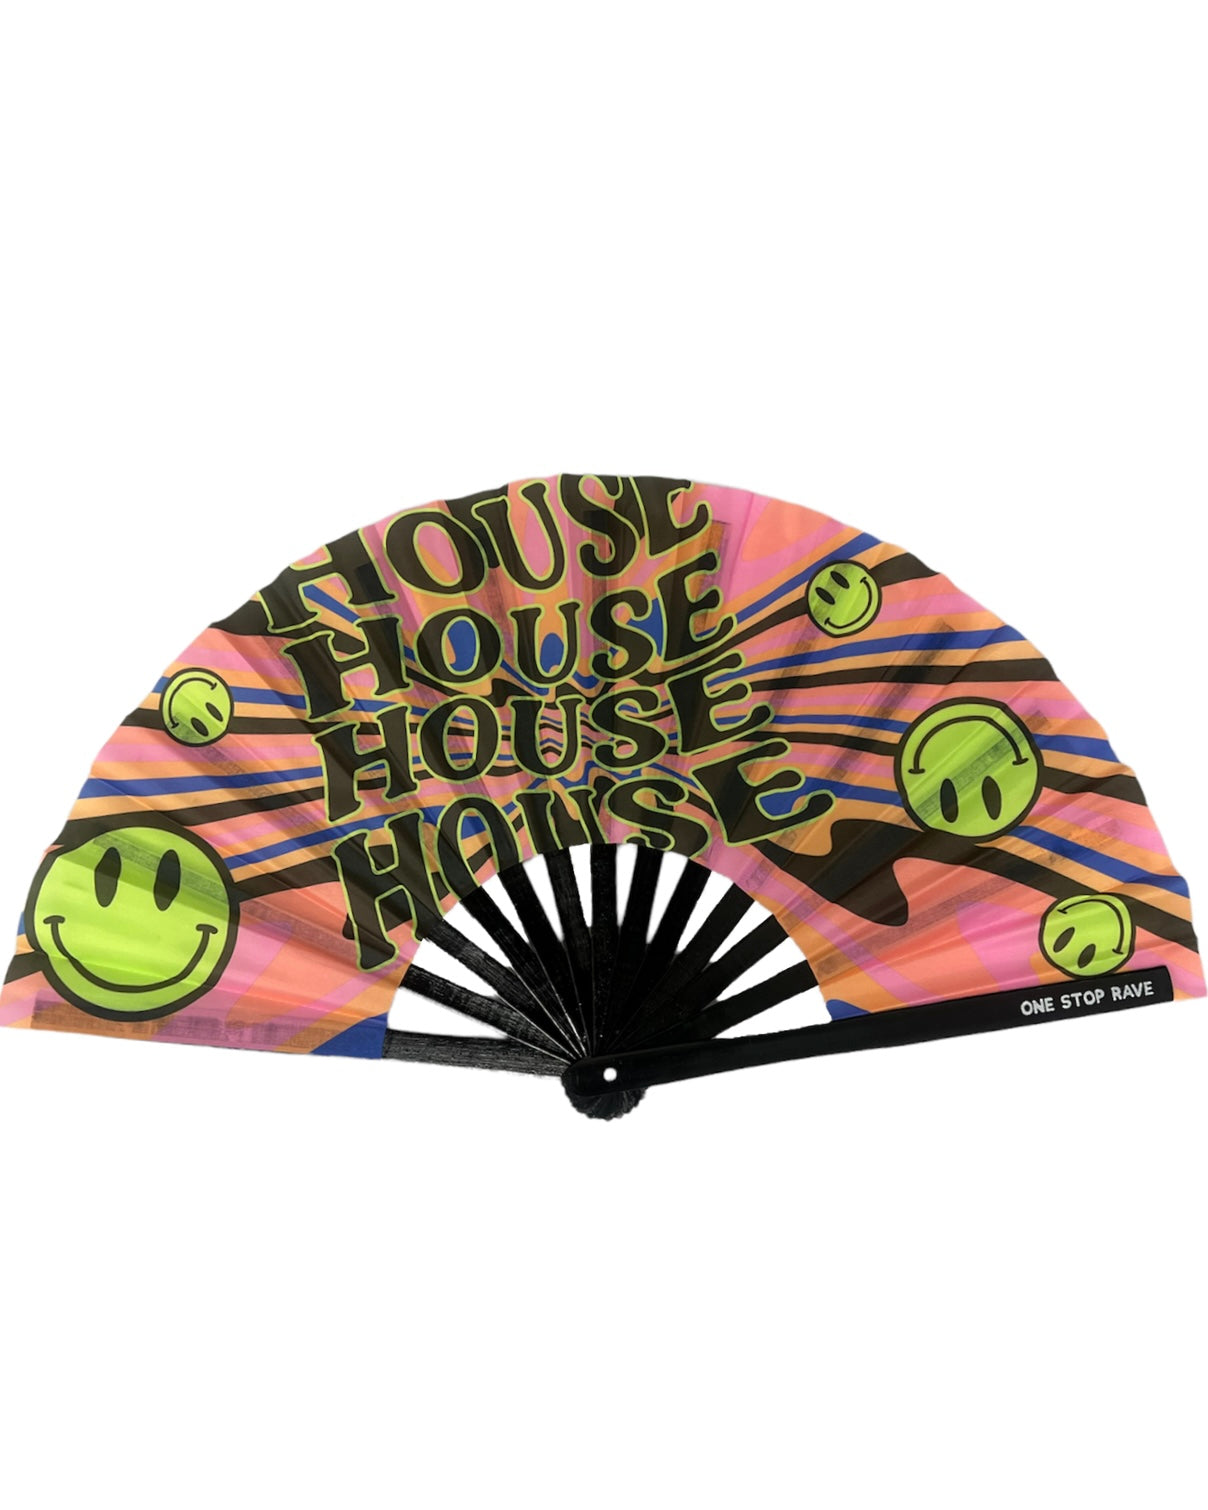 (MISPRINT) House Head Hand Fan, Festival Fans 13.5", - One Stop Rave